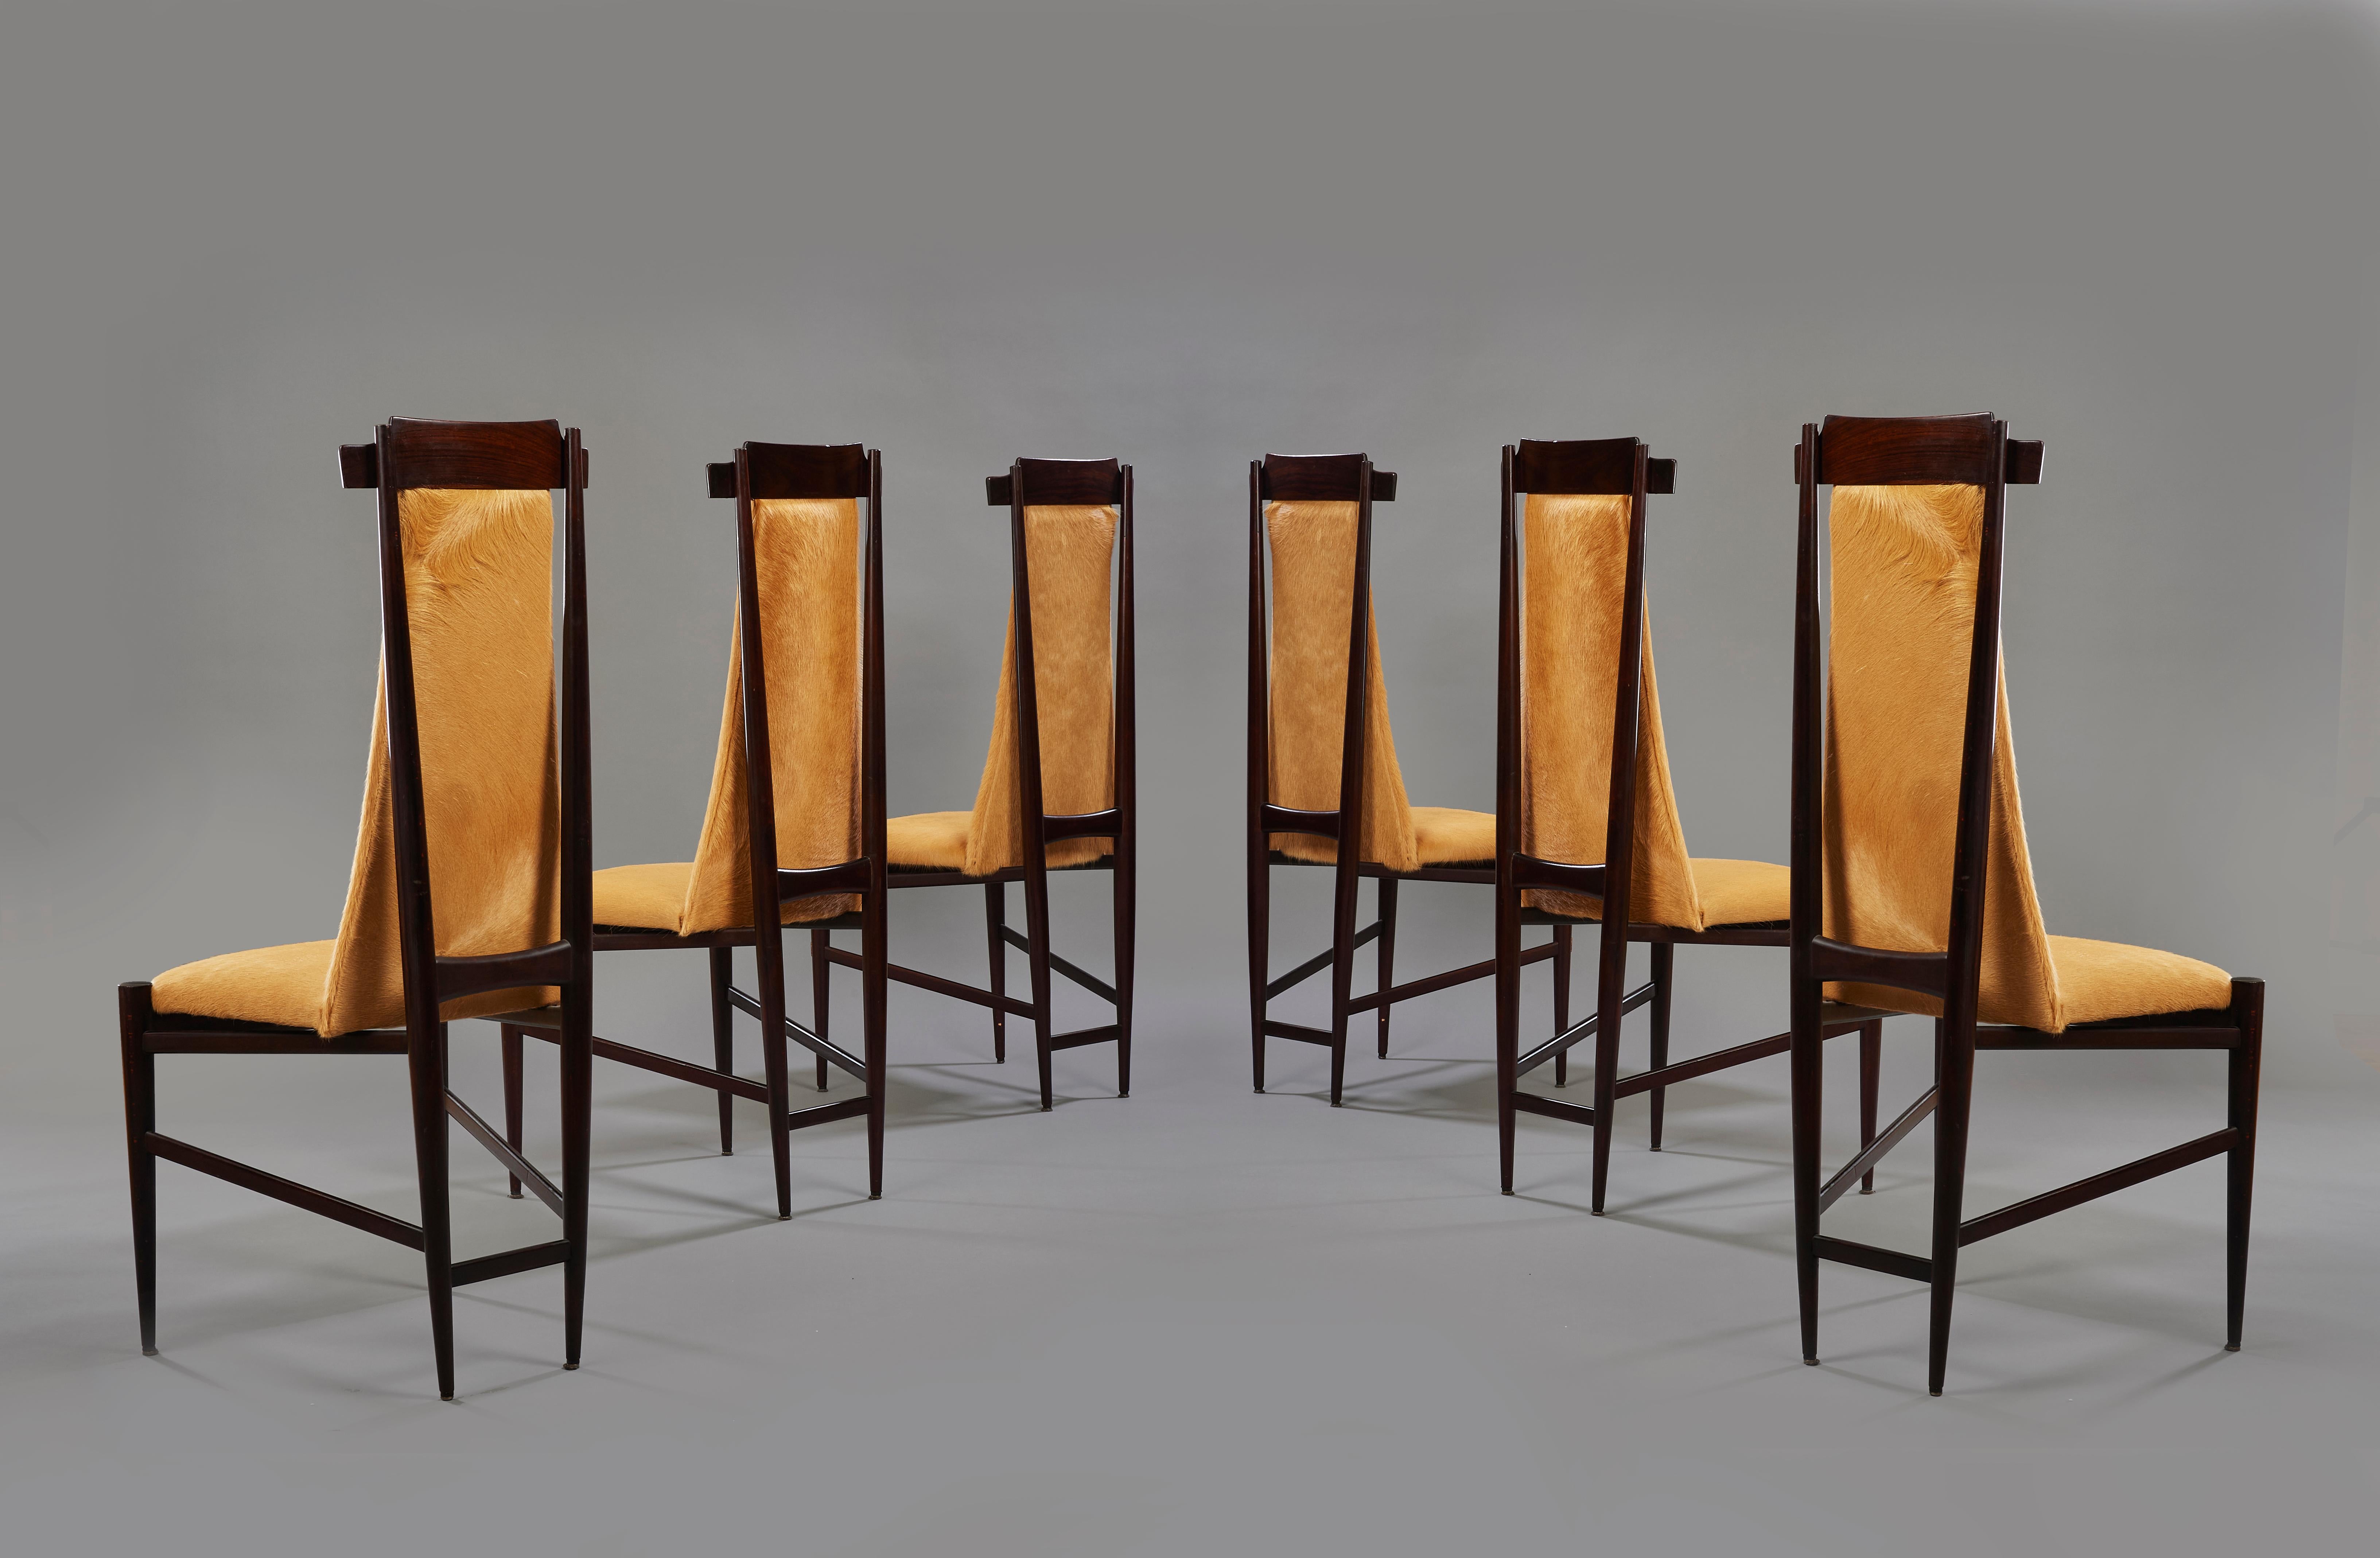 Sechs Esszimmerstühle aus Holz und braunem Rindsleder von Sergio Rodrigues, Brasilien, 1960er Jahre (Moderne der Mitte des Jahrhunderts) im Angebot